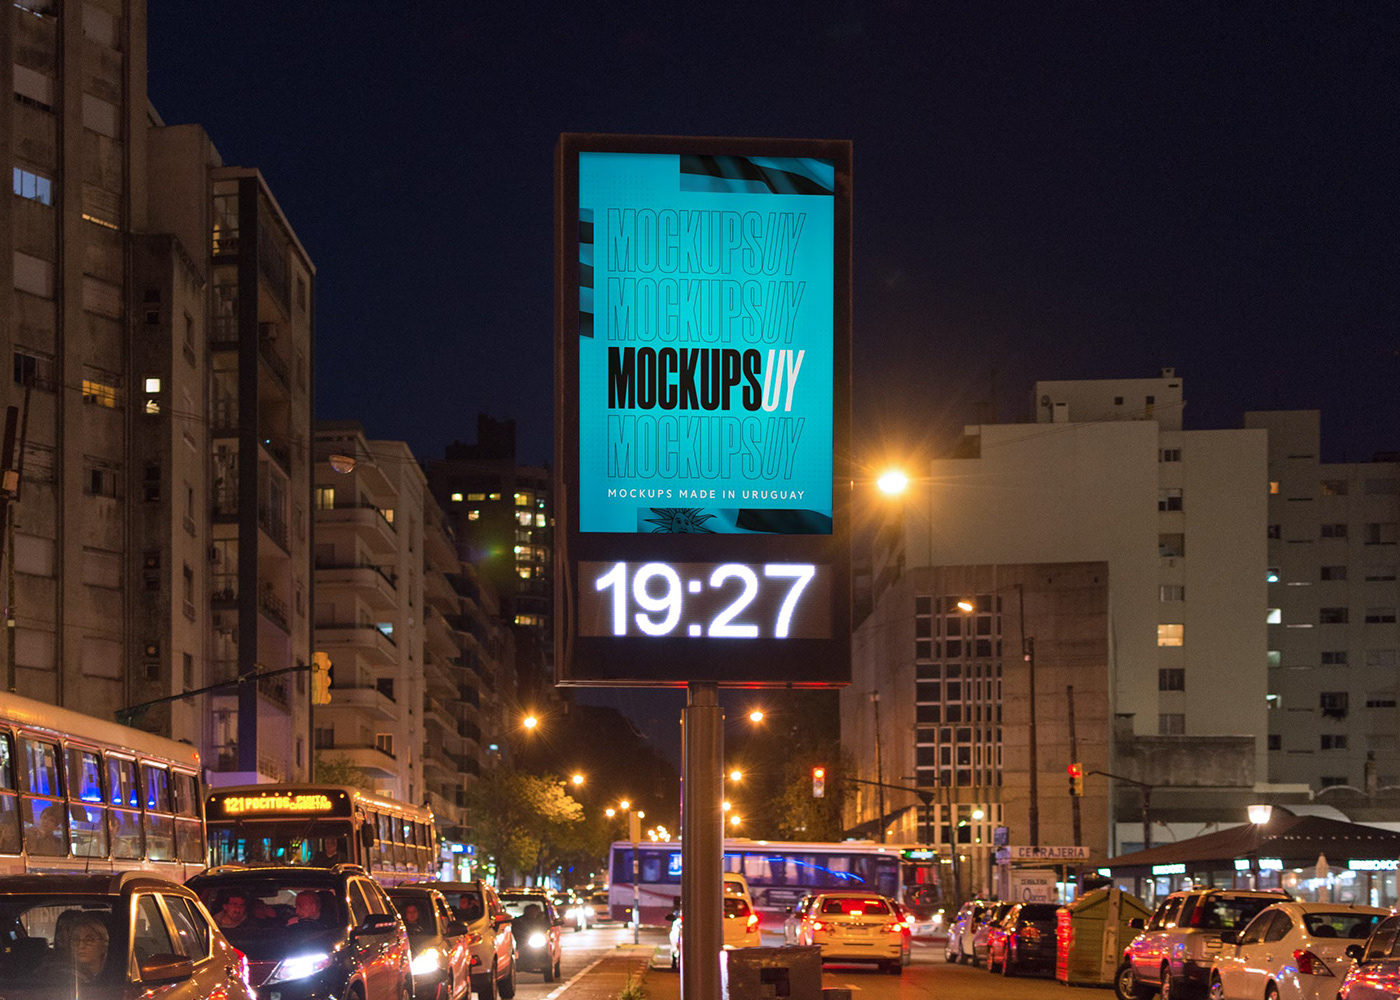 Mockup Montevideo uruguay mockupsuy ómnibus mockup Poster Mockup